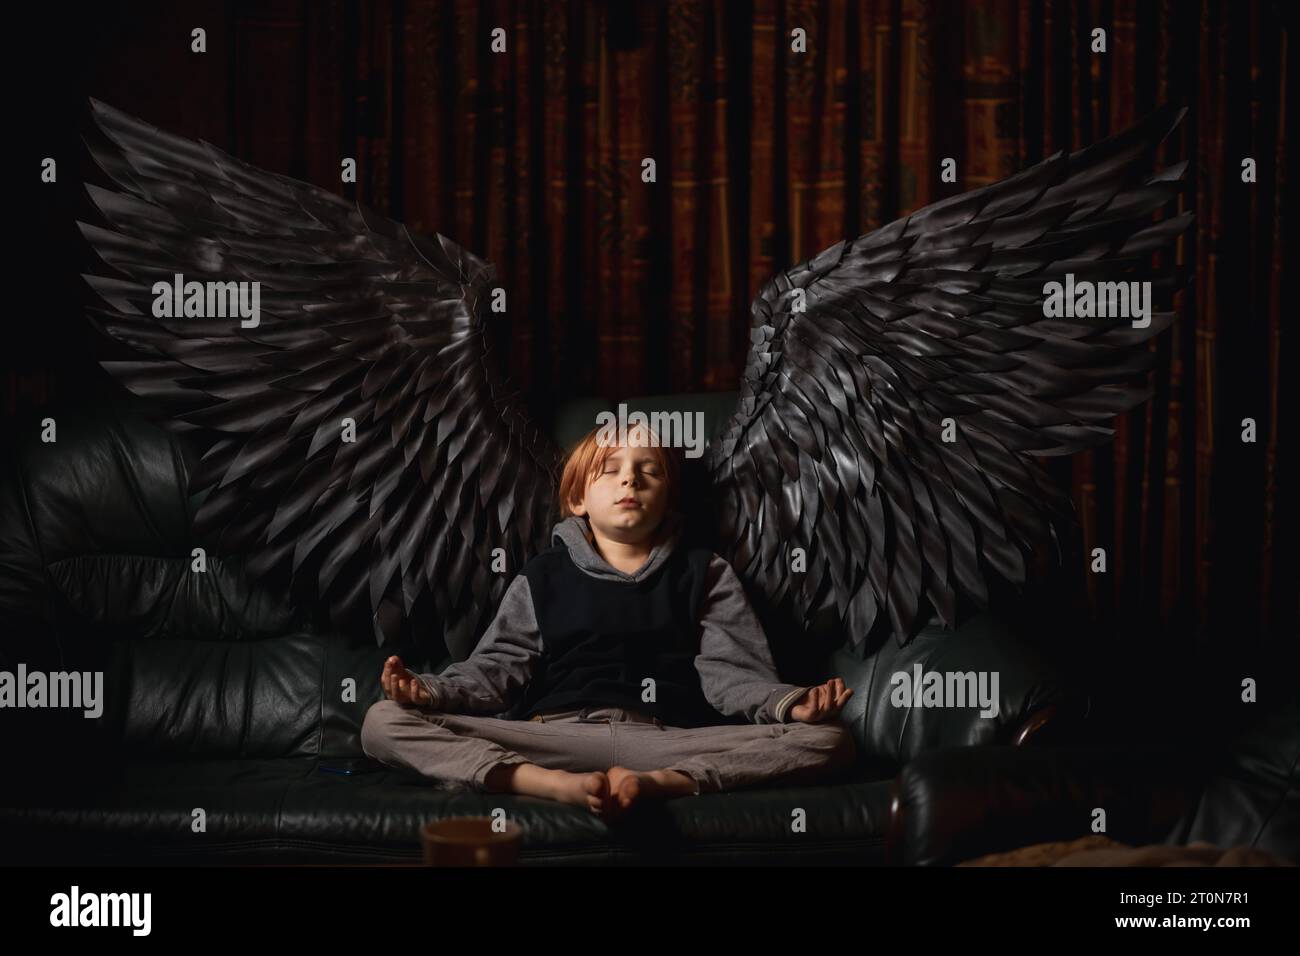 Un joven, de 9-10 años, se sienta en un sofá en una habitación oscura, meditando con sus alas de ángel negras extendidas. El chico se ve pacífico y sereno, como Foto de stock